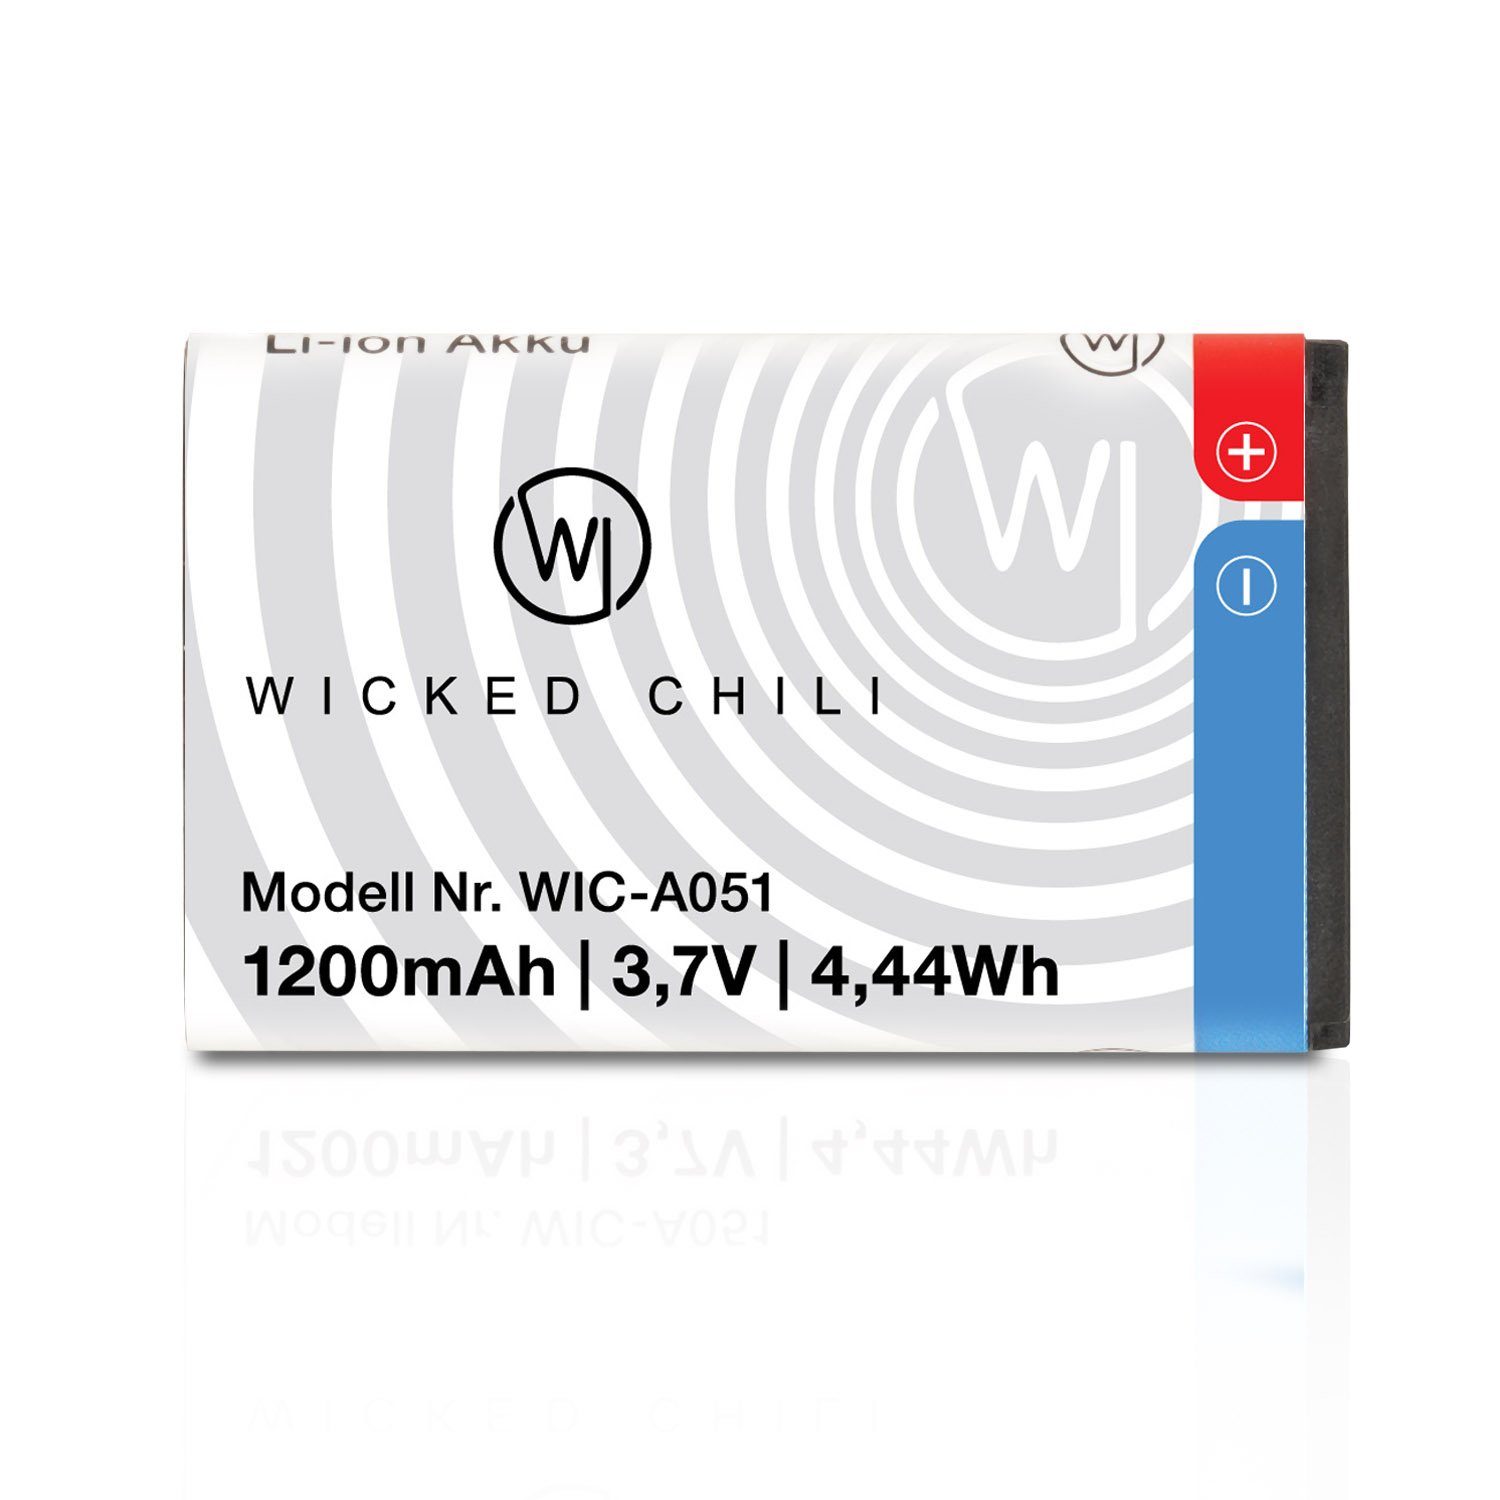 Wicked Chili BL-5C Ersatz-Akku für Nokia 6680 6230i (03. WIC-A051 1110 3110 Jul 6230 V) Zusatz-Akku